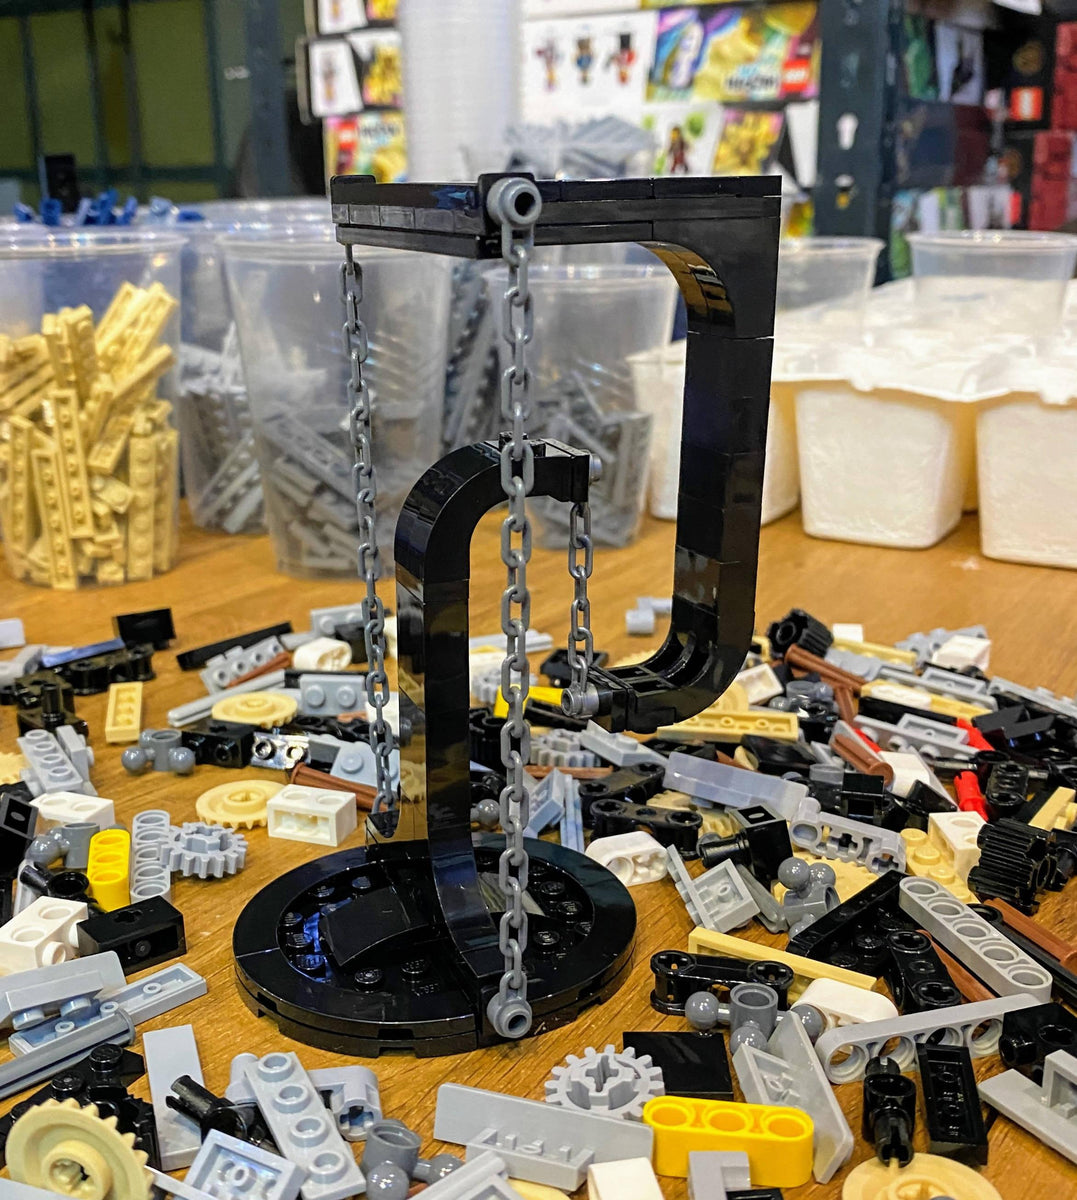 LEGO MOC Tensegrity GAN cube stand by Big Brix